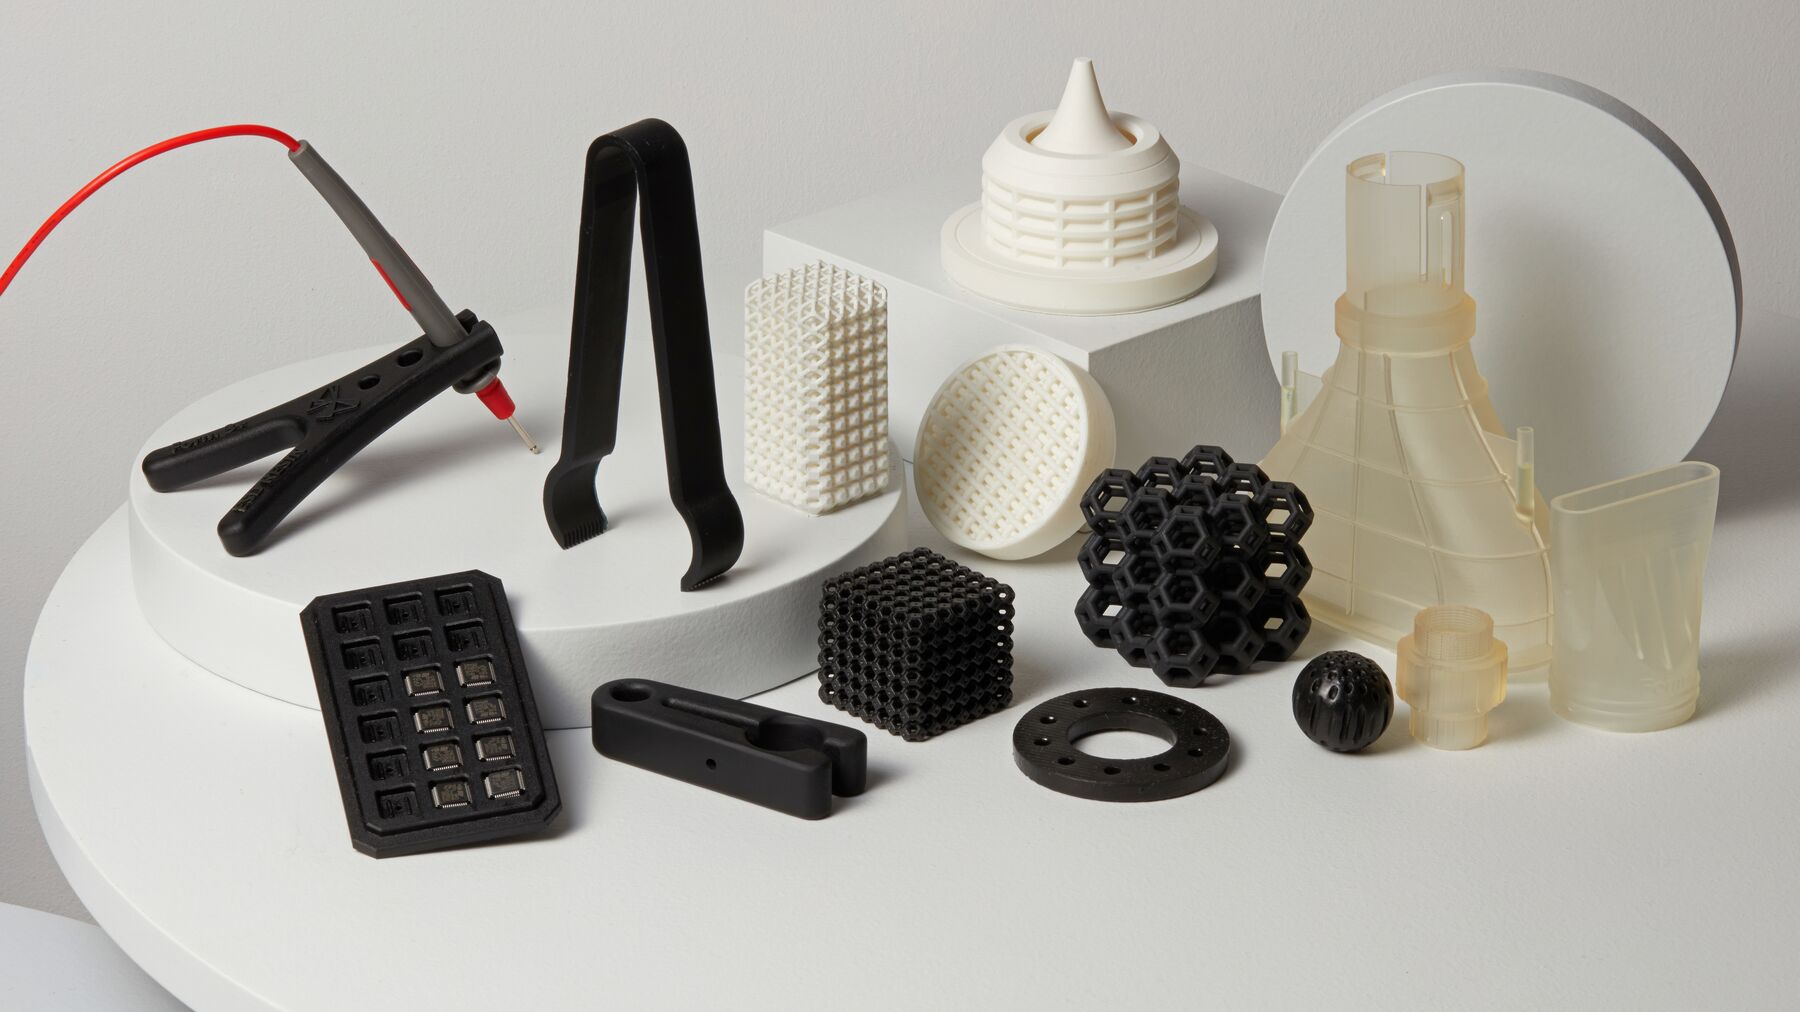 3D gedruckte Bauteile mit Formlabs